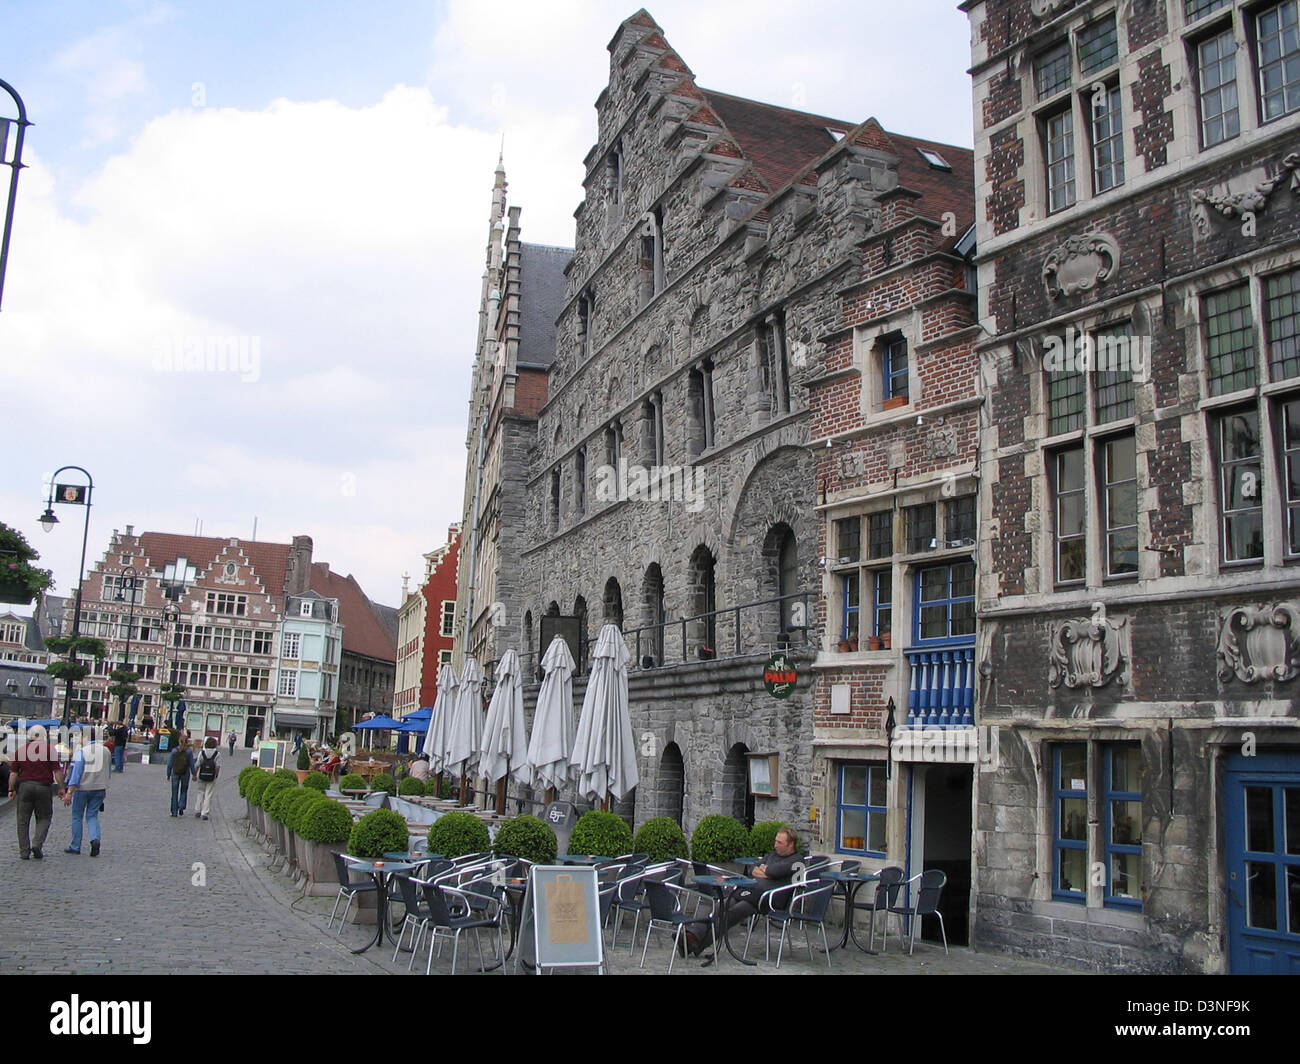 (Dossier) - l'image montre maisons le long de la Graslei, l'ancien centre de commerce à l'ancien port de Gand, Belgique, 18 mai 2005. Photo : Juergen Darmstaedter Banque D'Images